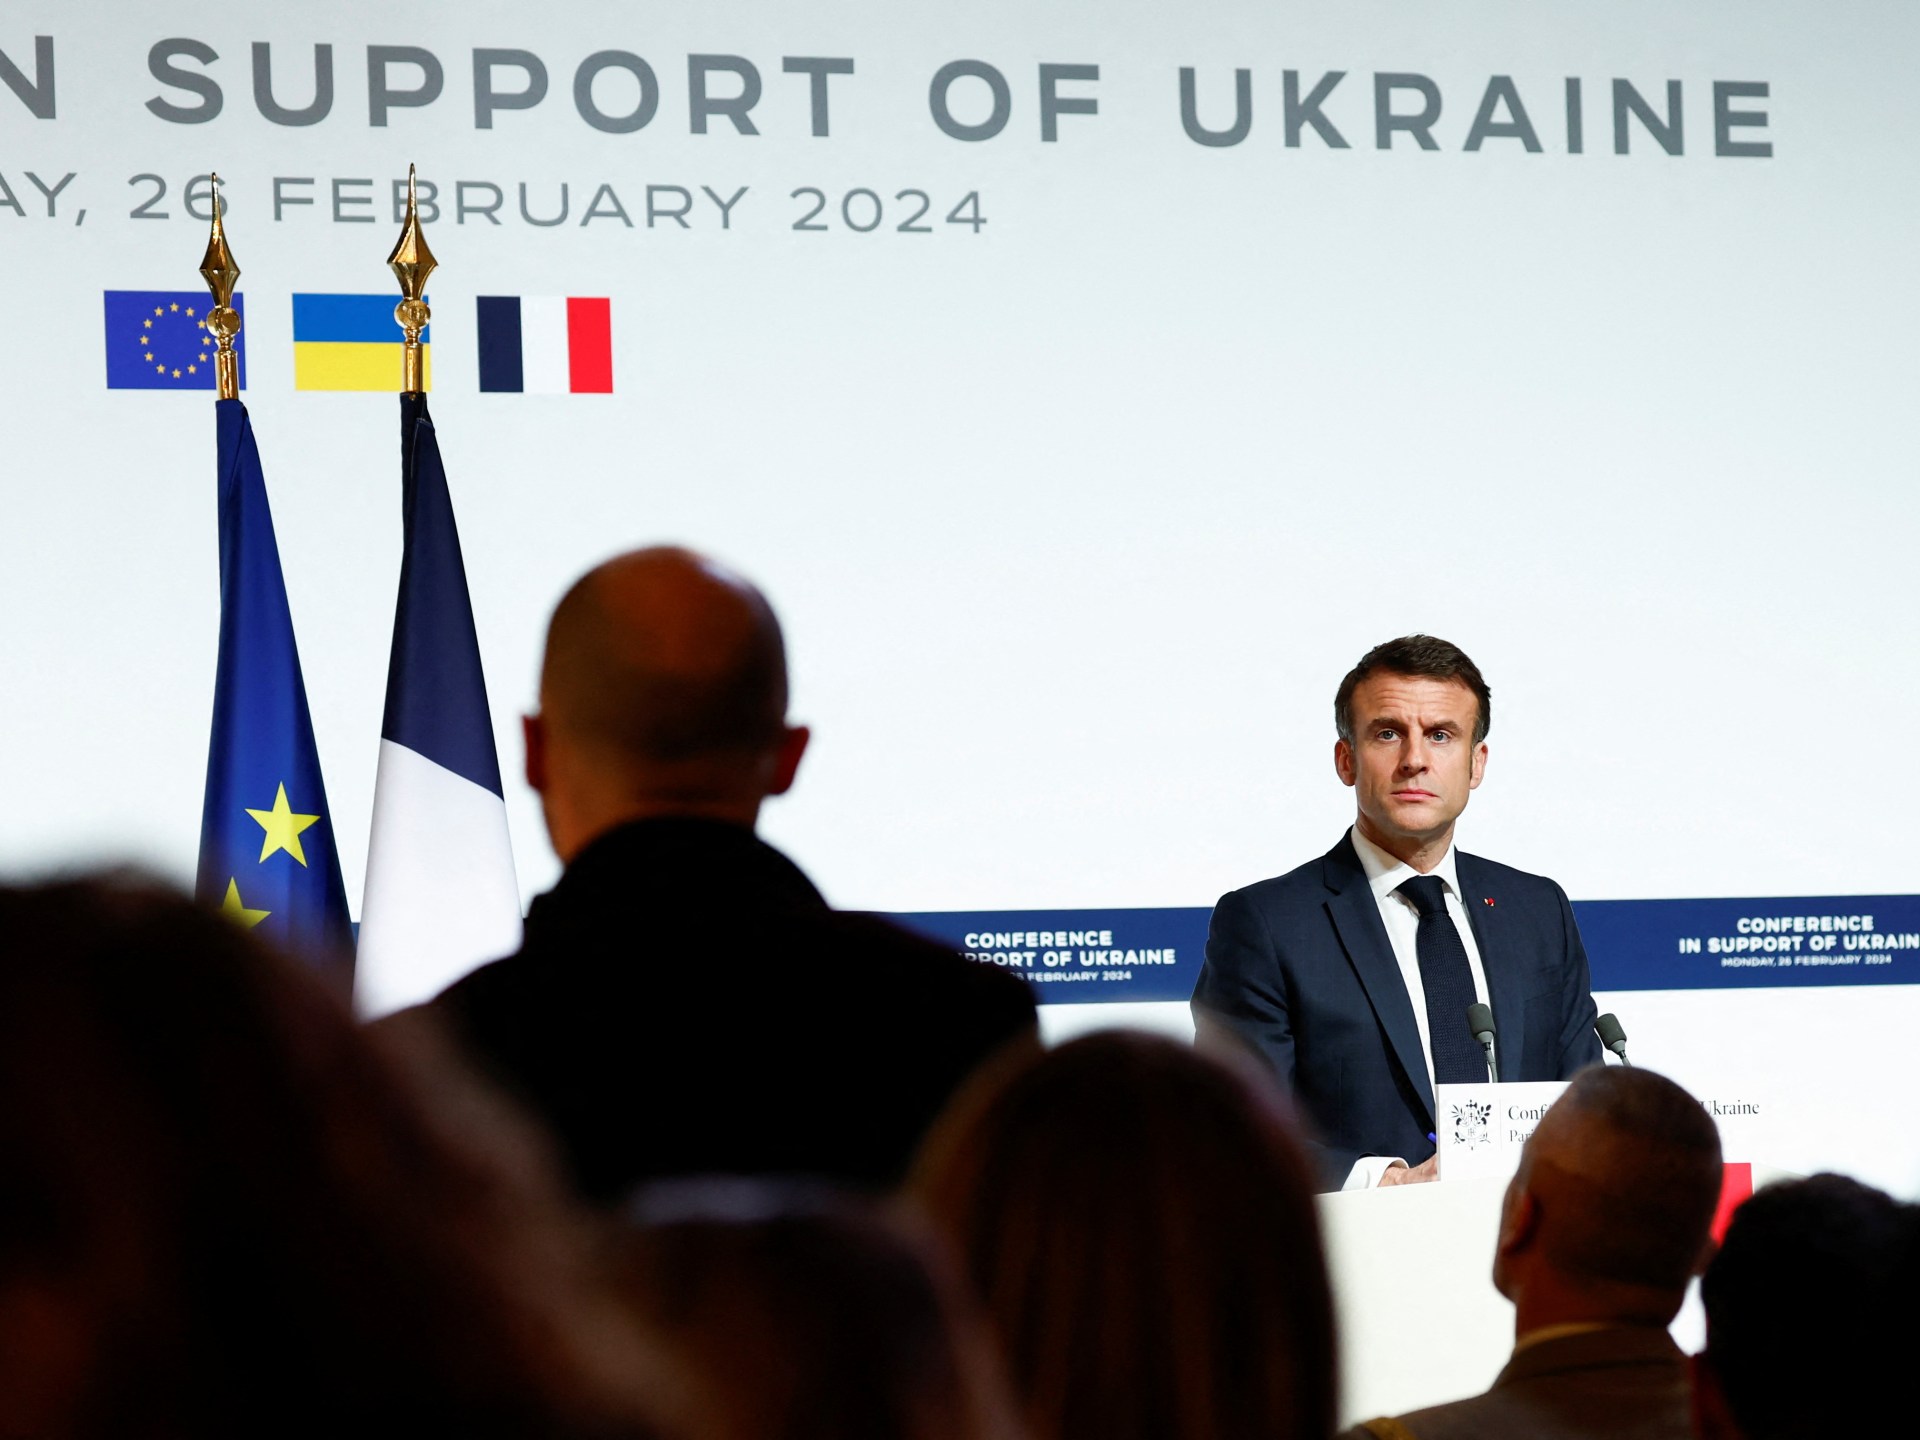 Germania e NATO escludono l’invio di truppe in Ucraina mentre la Russia rimprovera Macron  Notizie sulla guerra russo-ucraina